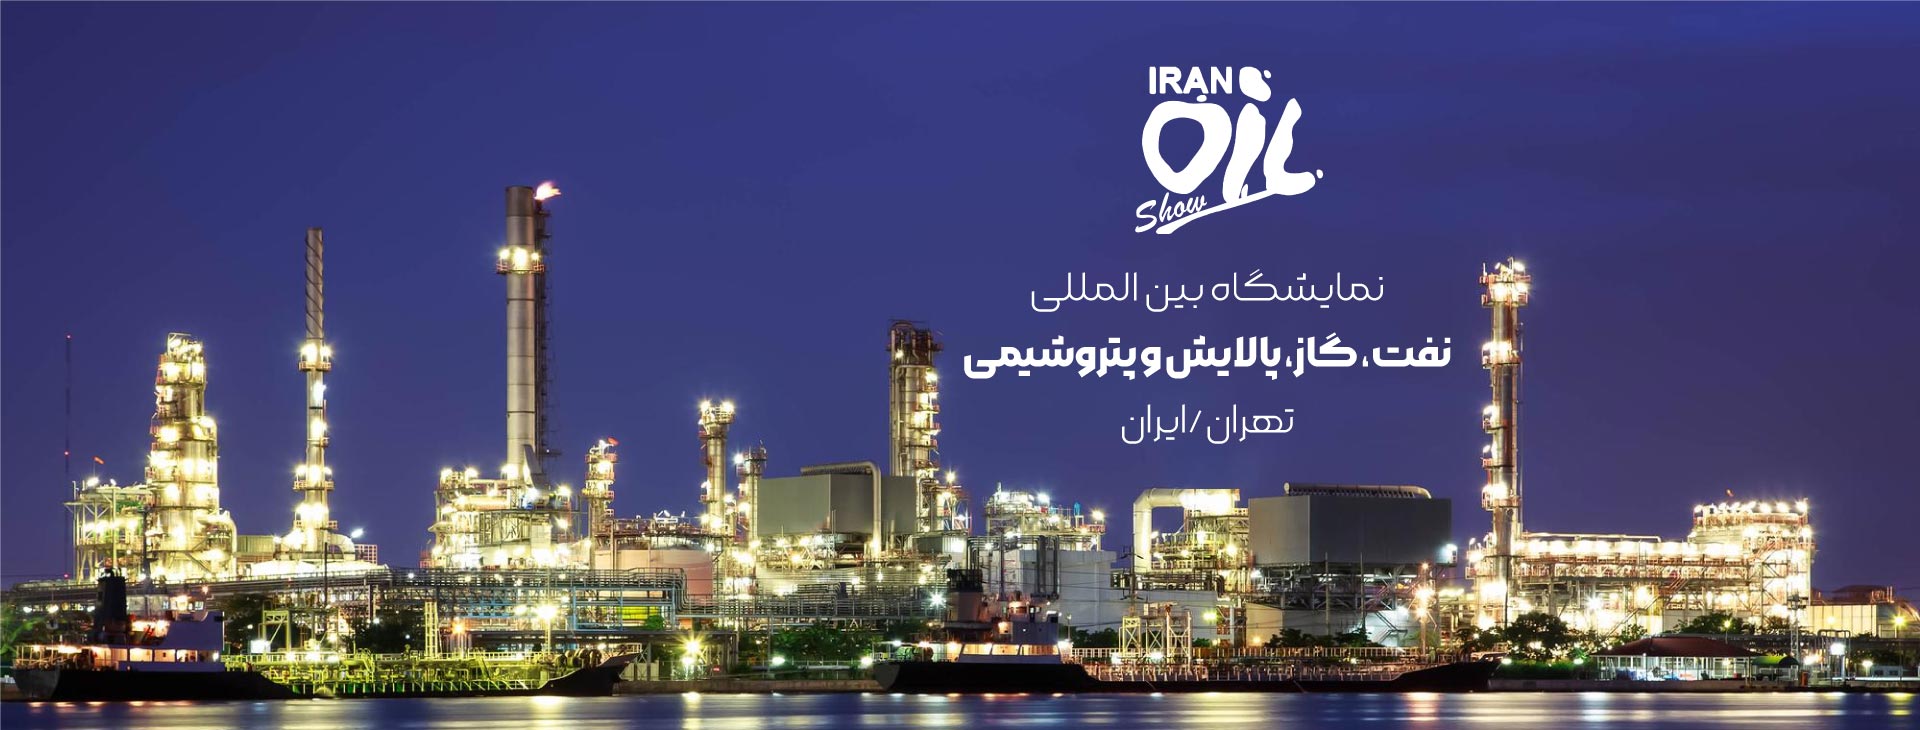 نمایشگاه بین المللی نفت، گاز، پالایش و پتروشیمی تهران - ایران